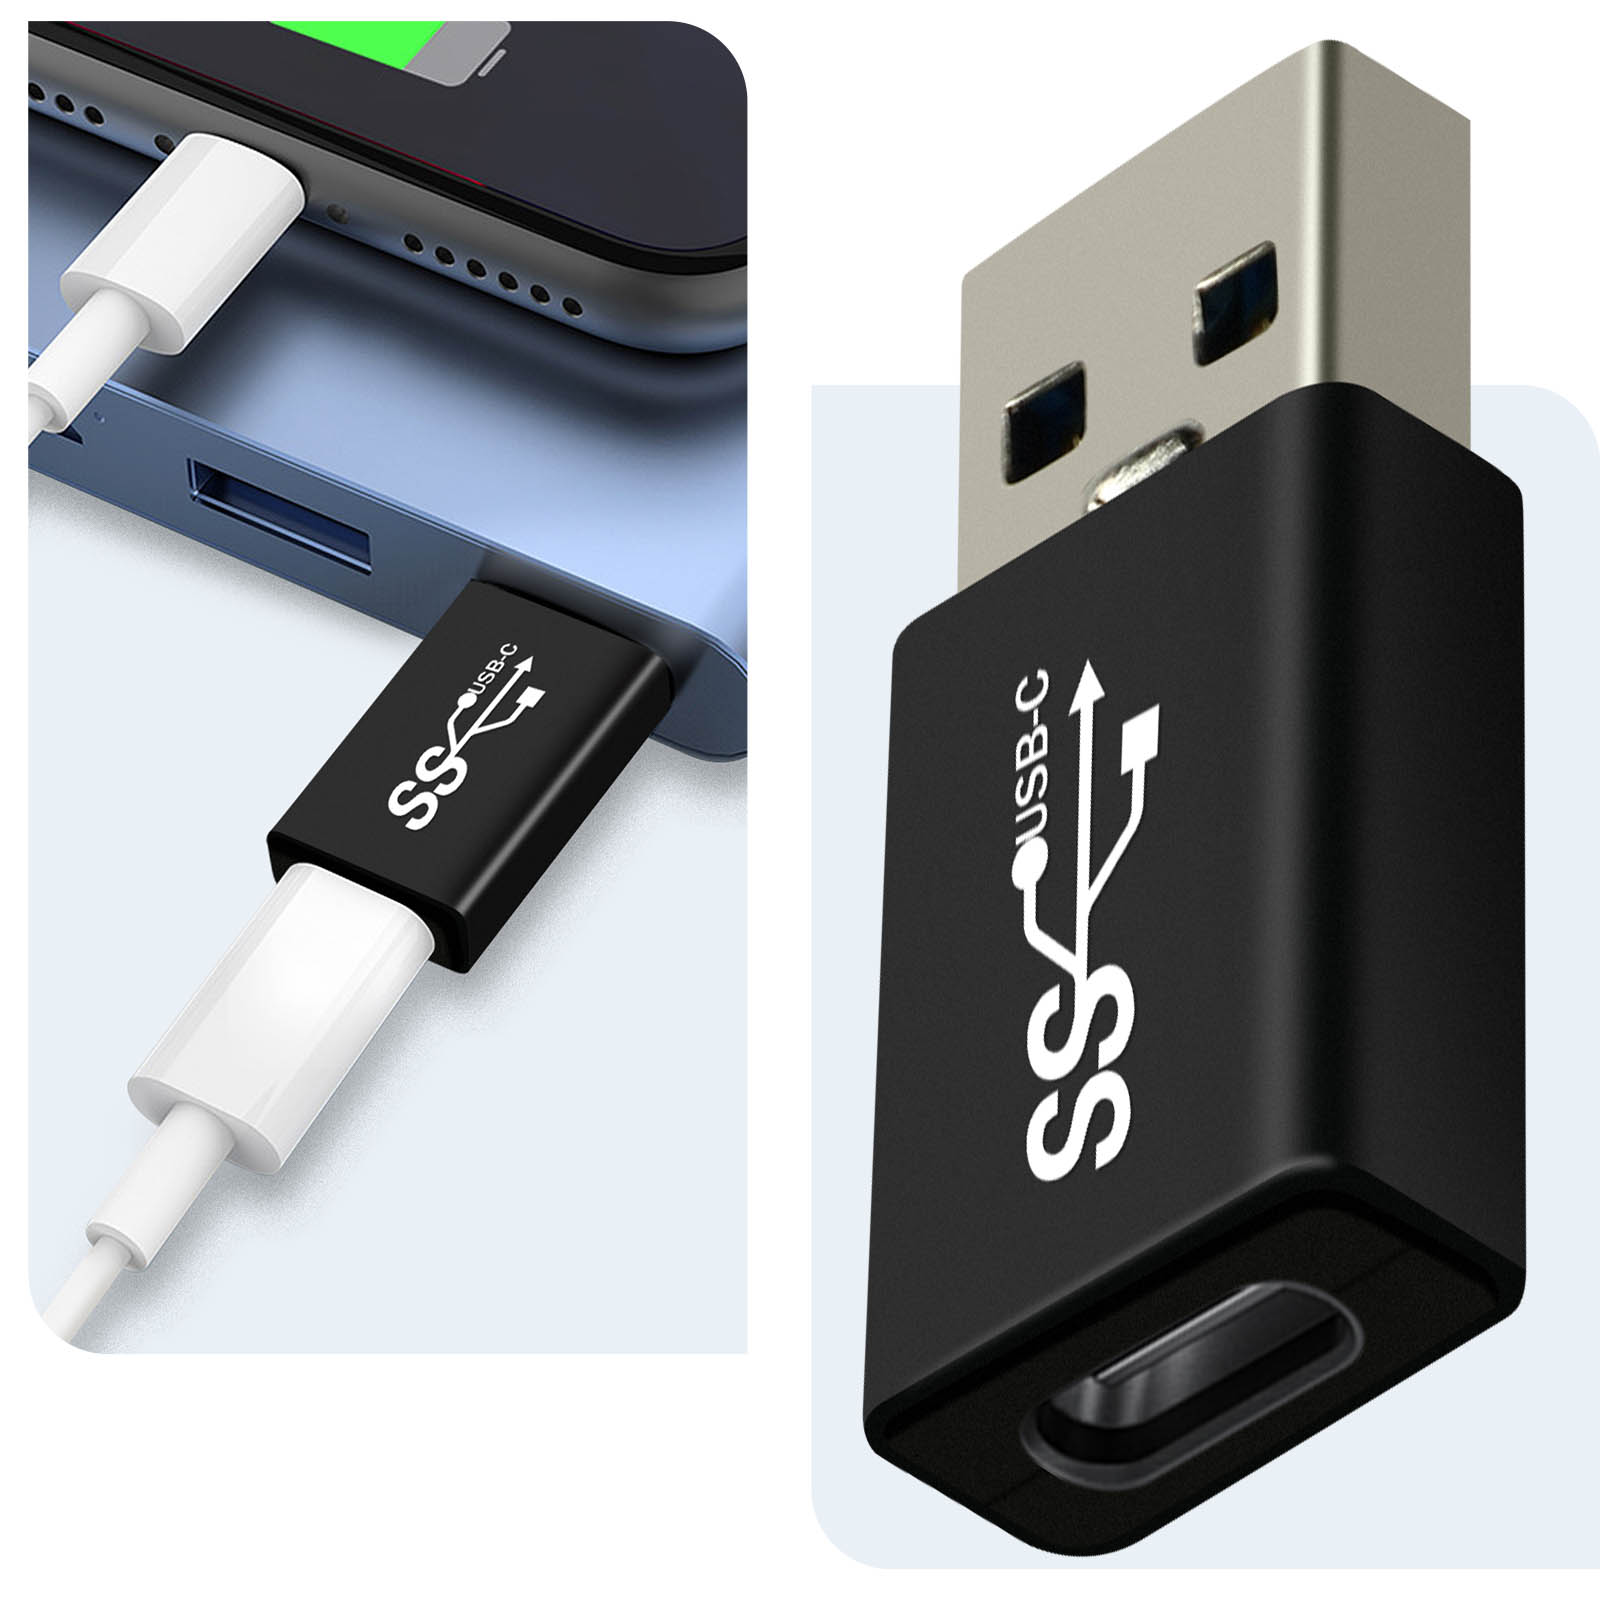 Adaptateur USB C USB, Pack de 4 Adaptateurs OTG mâle femelle - Noir -  Français